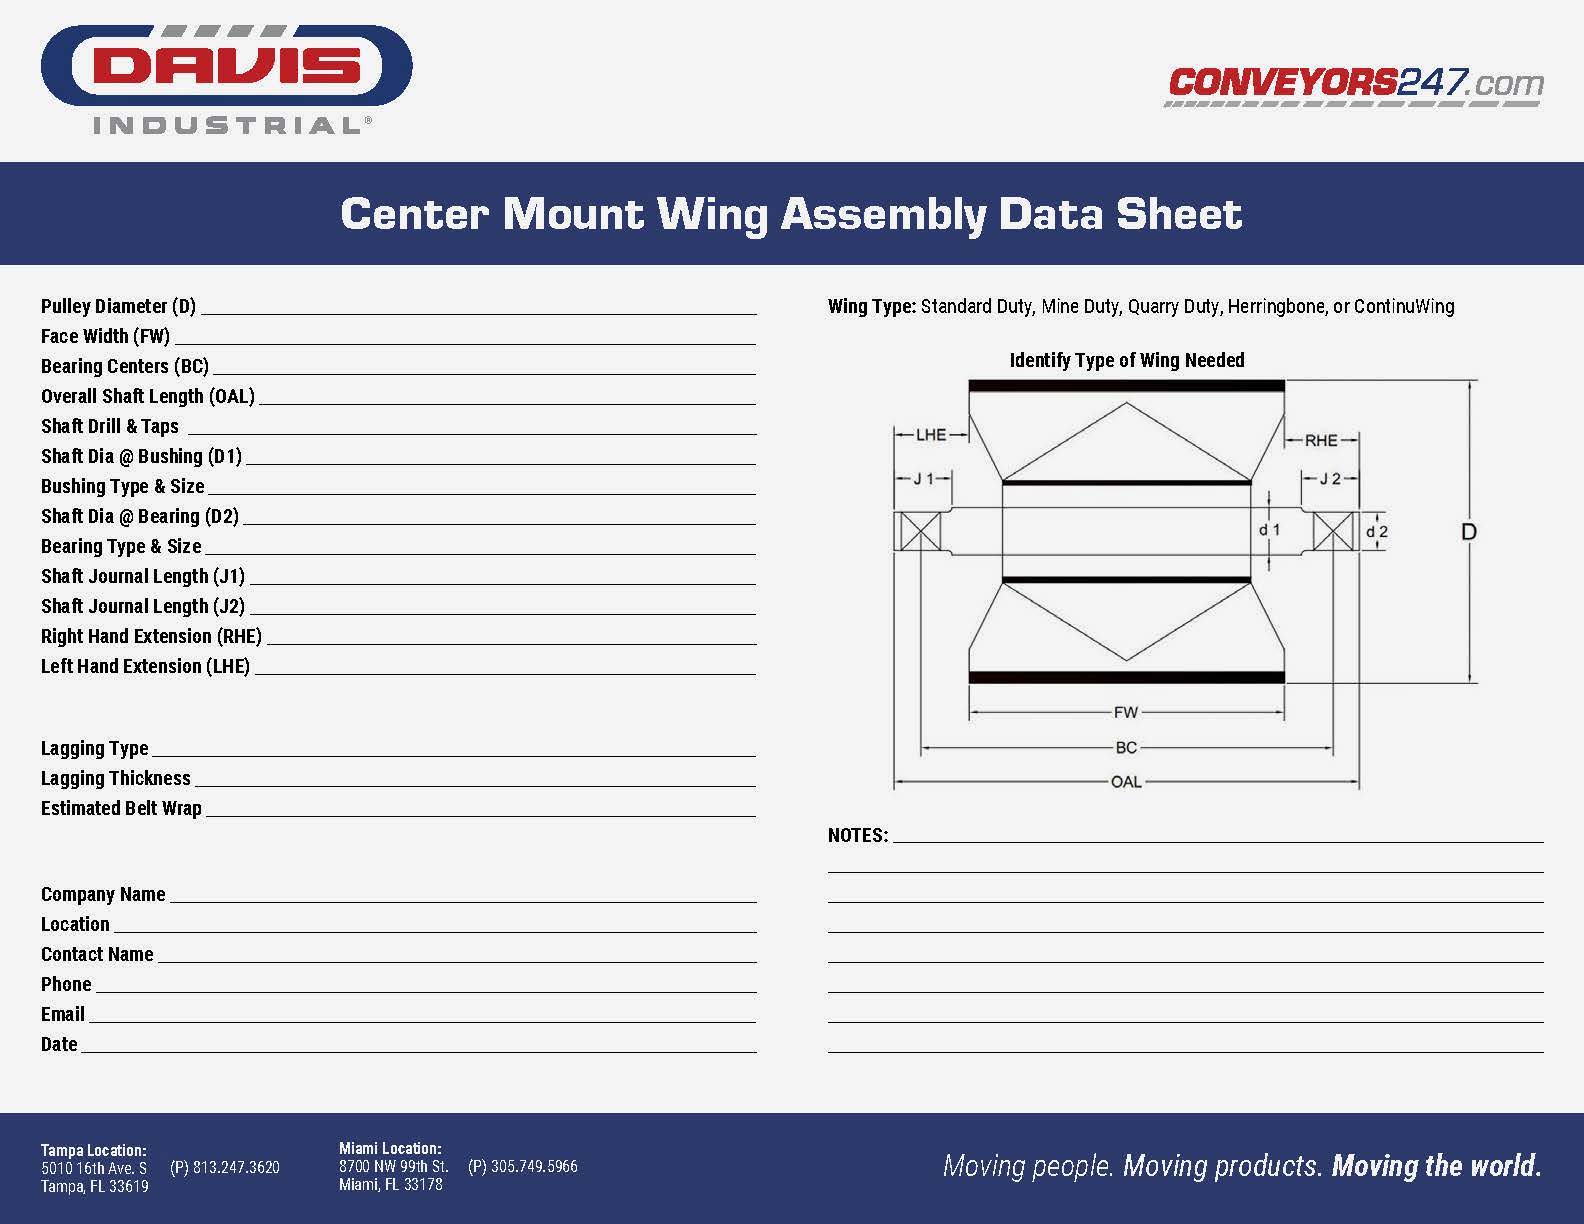 Davis_Center Mount Wing Assembly_Data Sheet